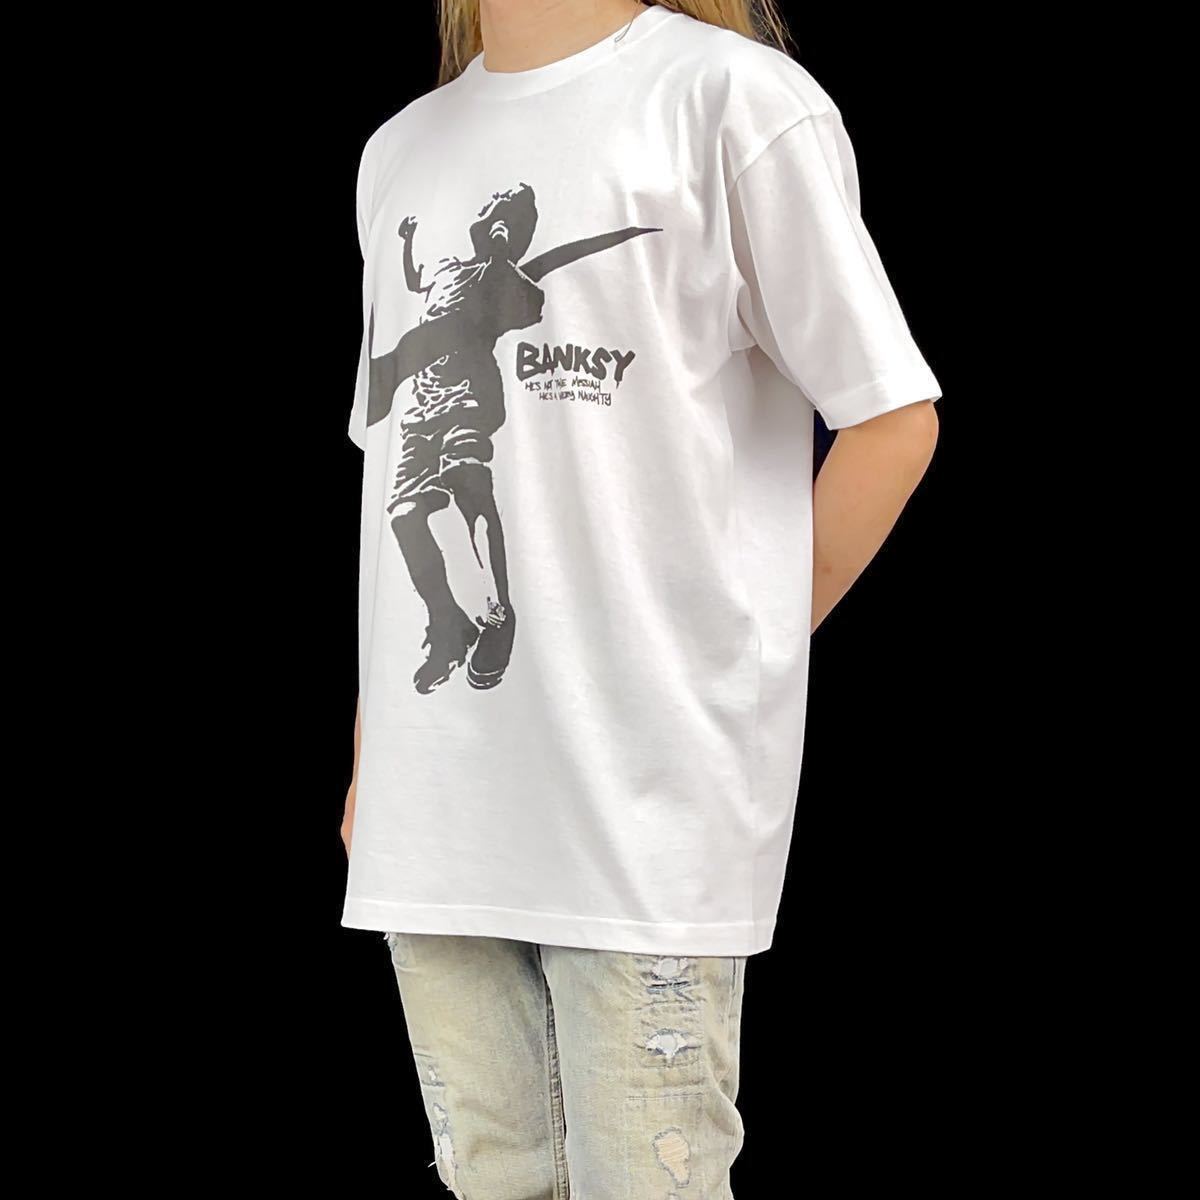 新品 バンクシー BANKSY スウォッシュ AIR スポーツ ジャンプ 少年 大きい オーバー ワイド フィット ビッグ プリント Tシャツ XXLサイズ